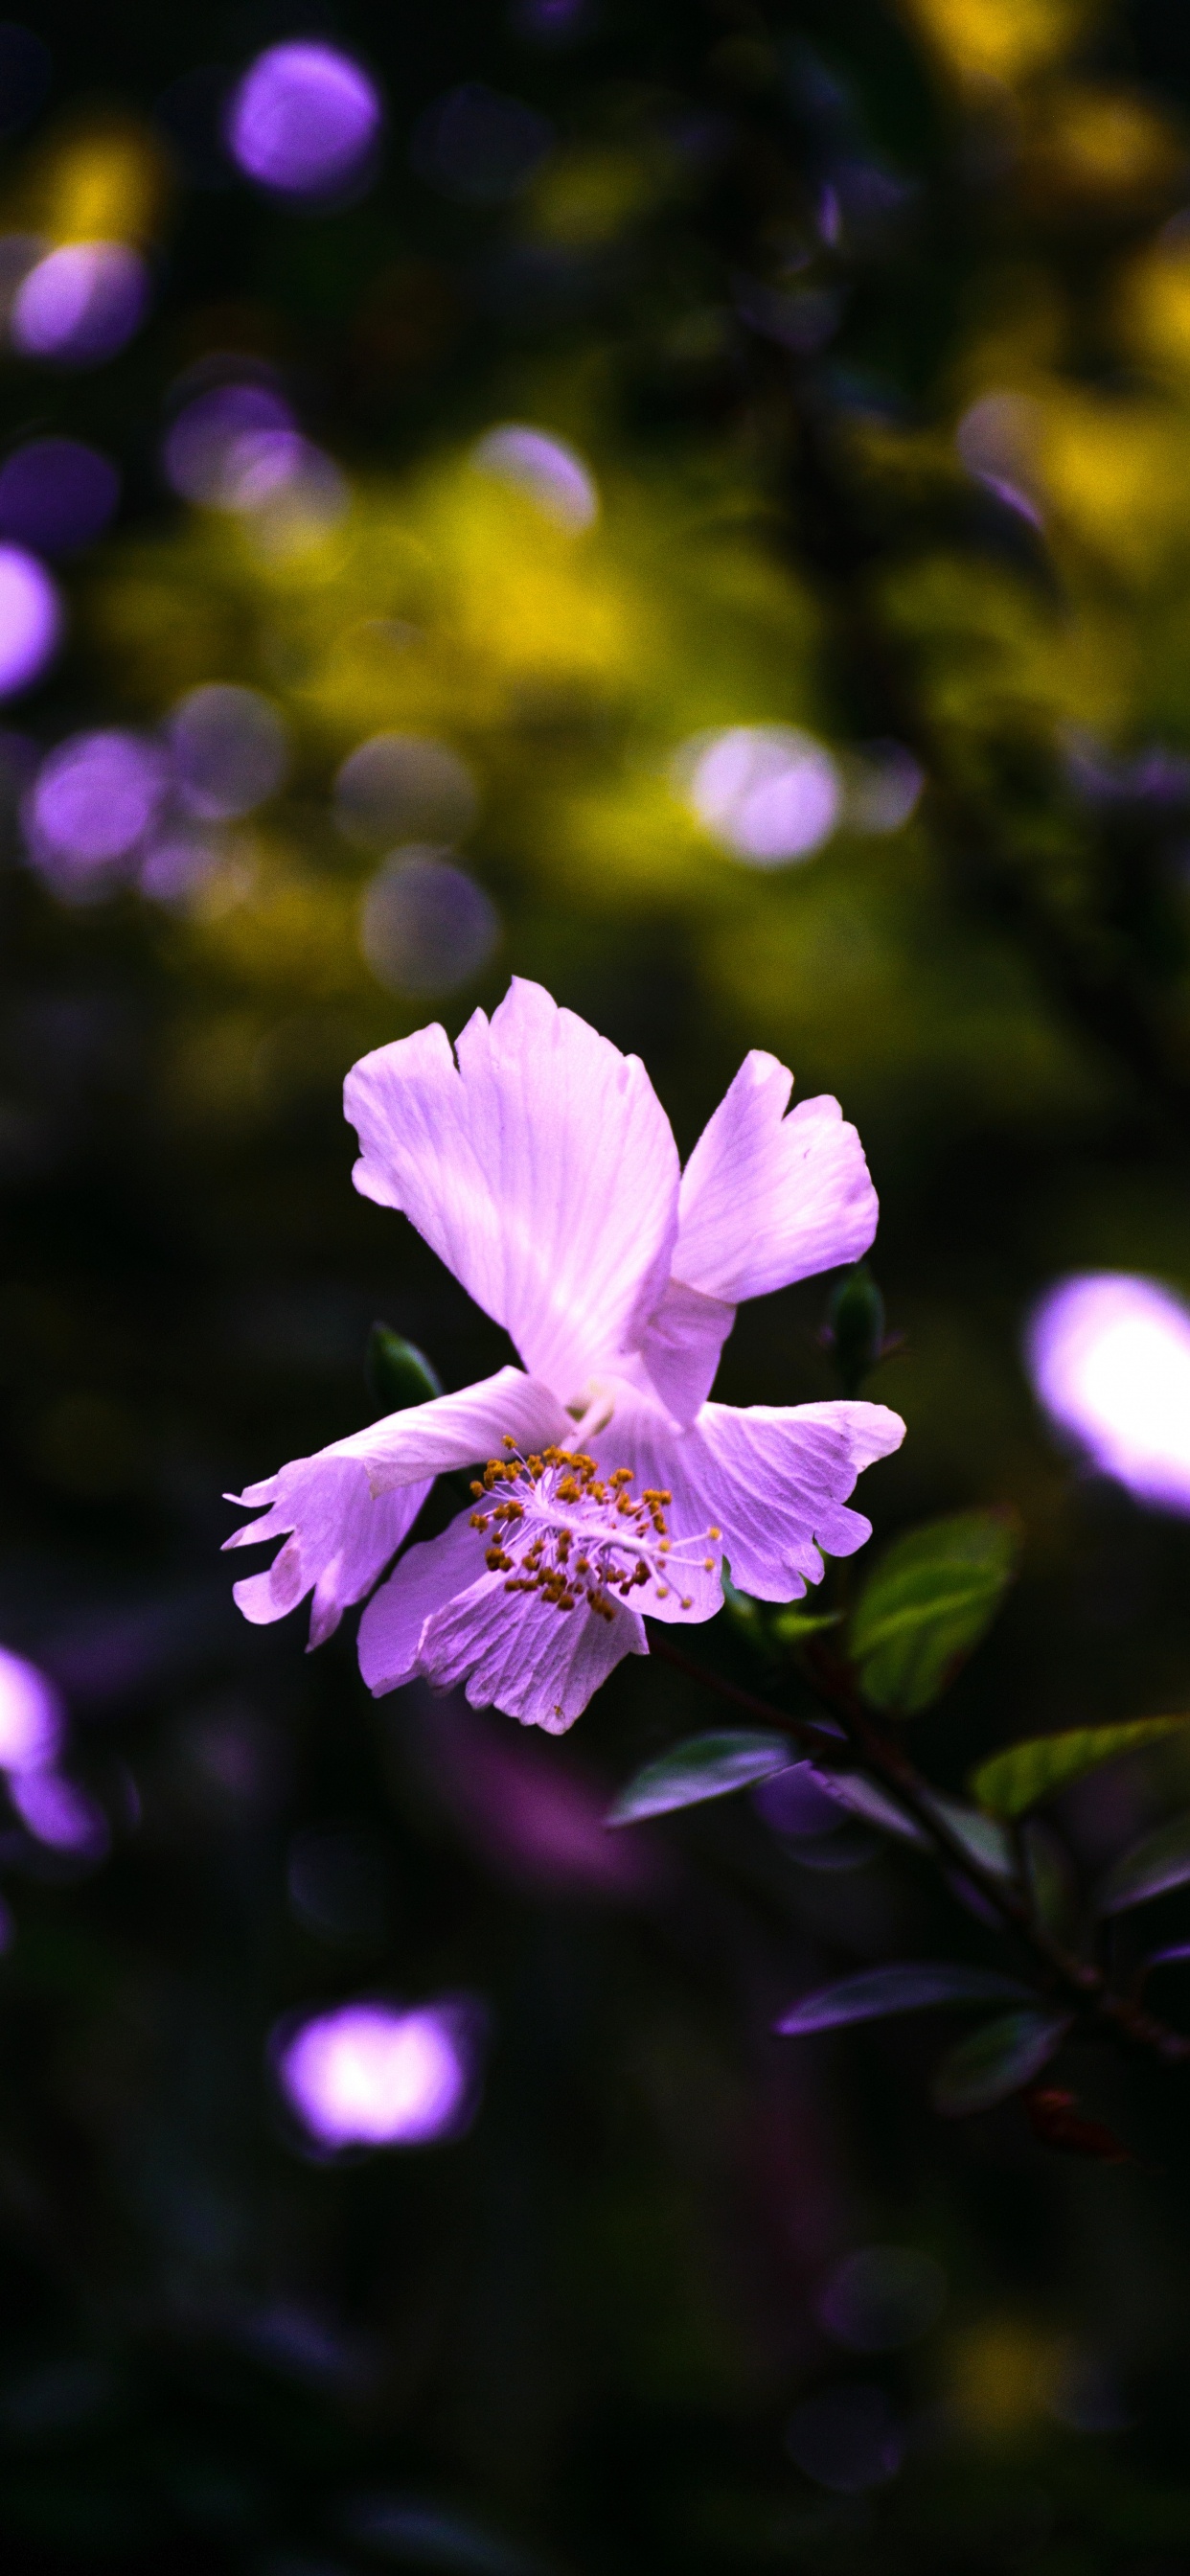 Purple Flower in Tilt Shift Lens. Wallpaper in 1242x2688 Resolution